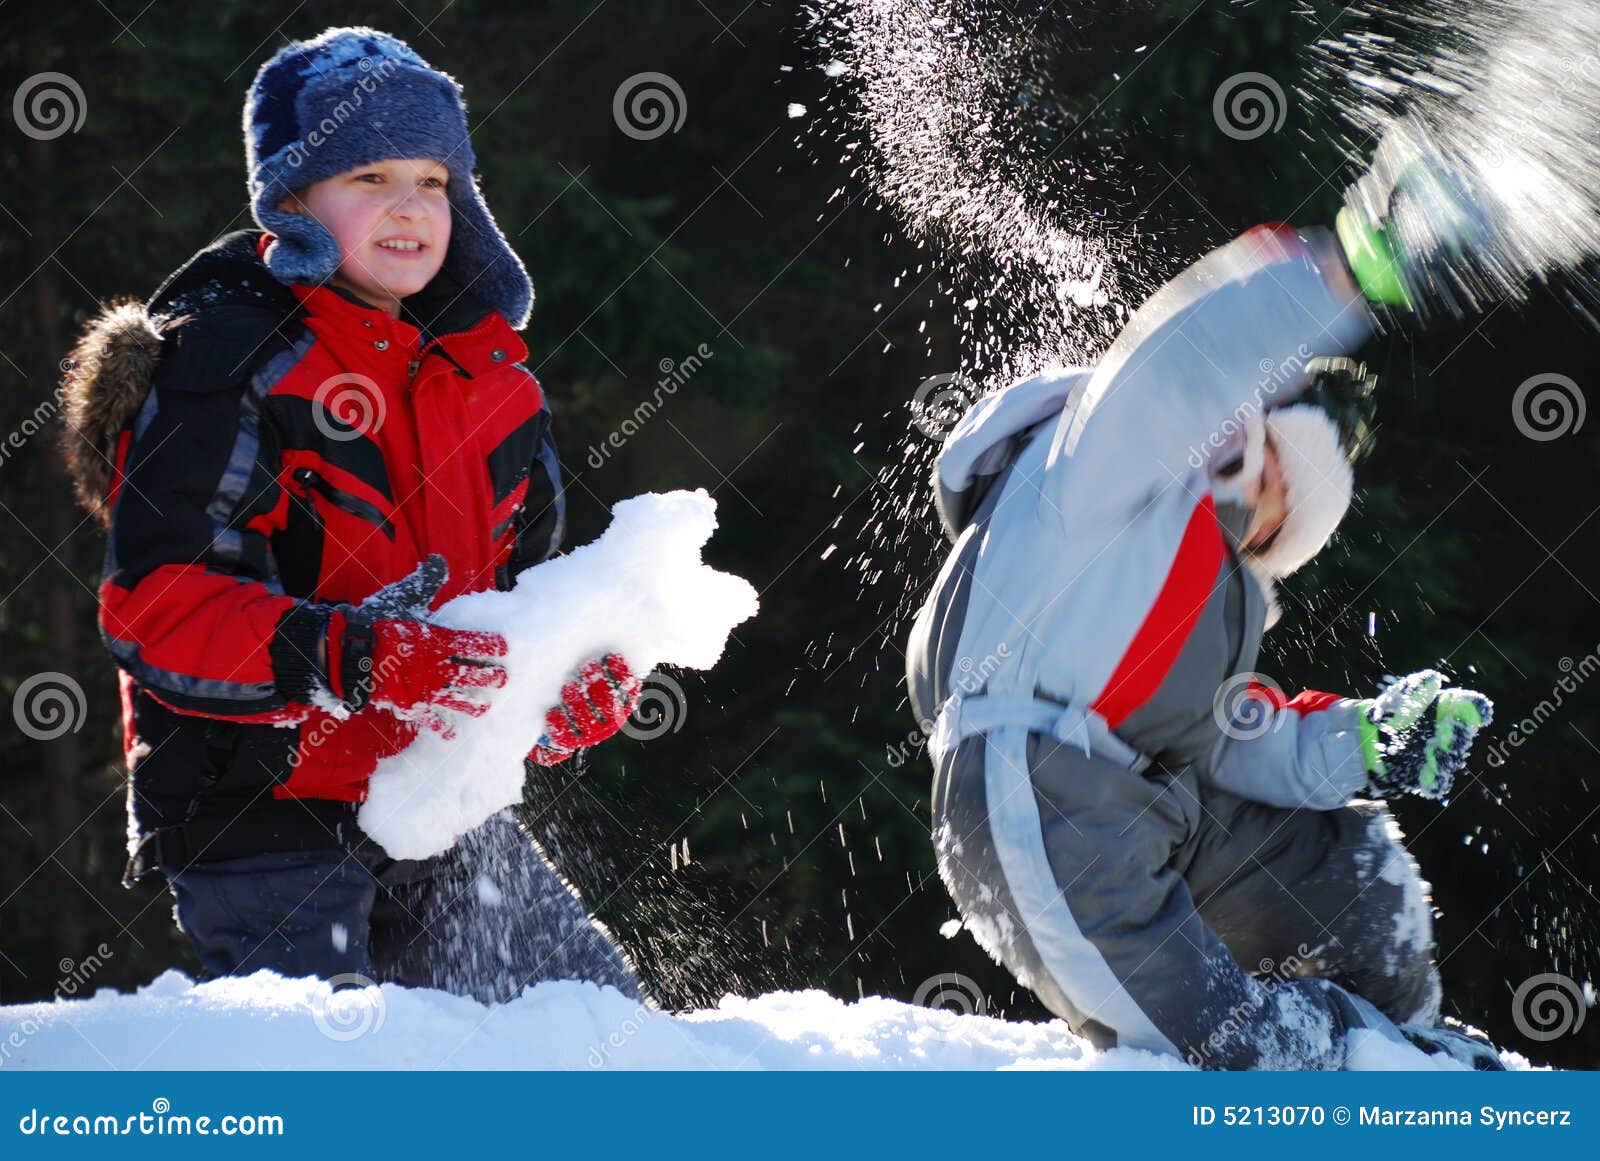 В окно кидают снежки. Мальчик играющий в снежки литье. Папа с сыном играют в снежки.